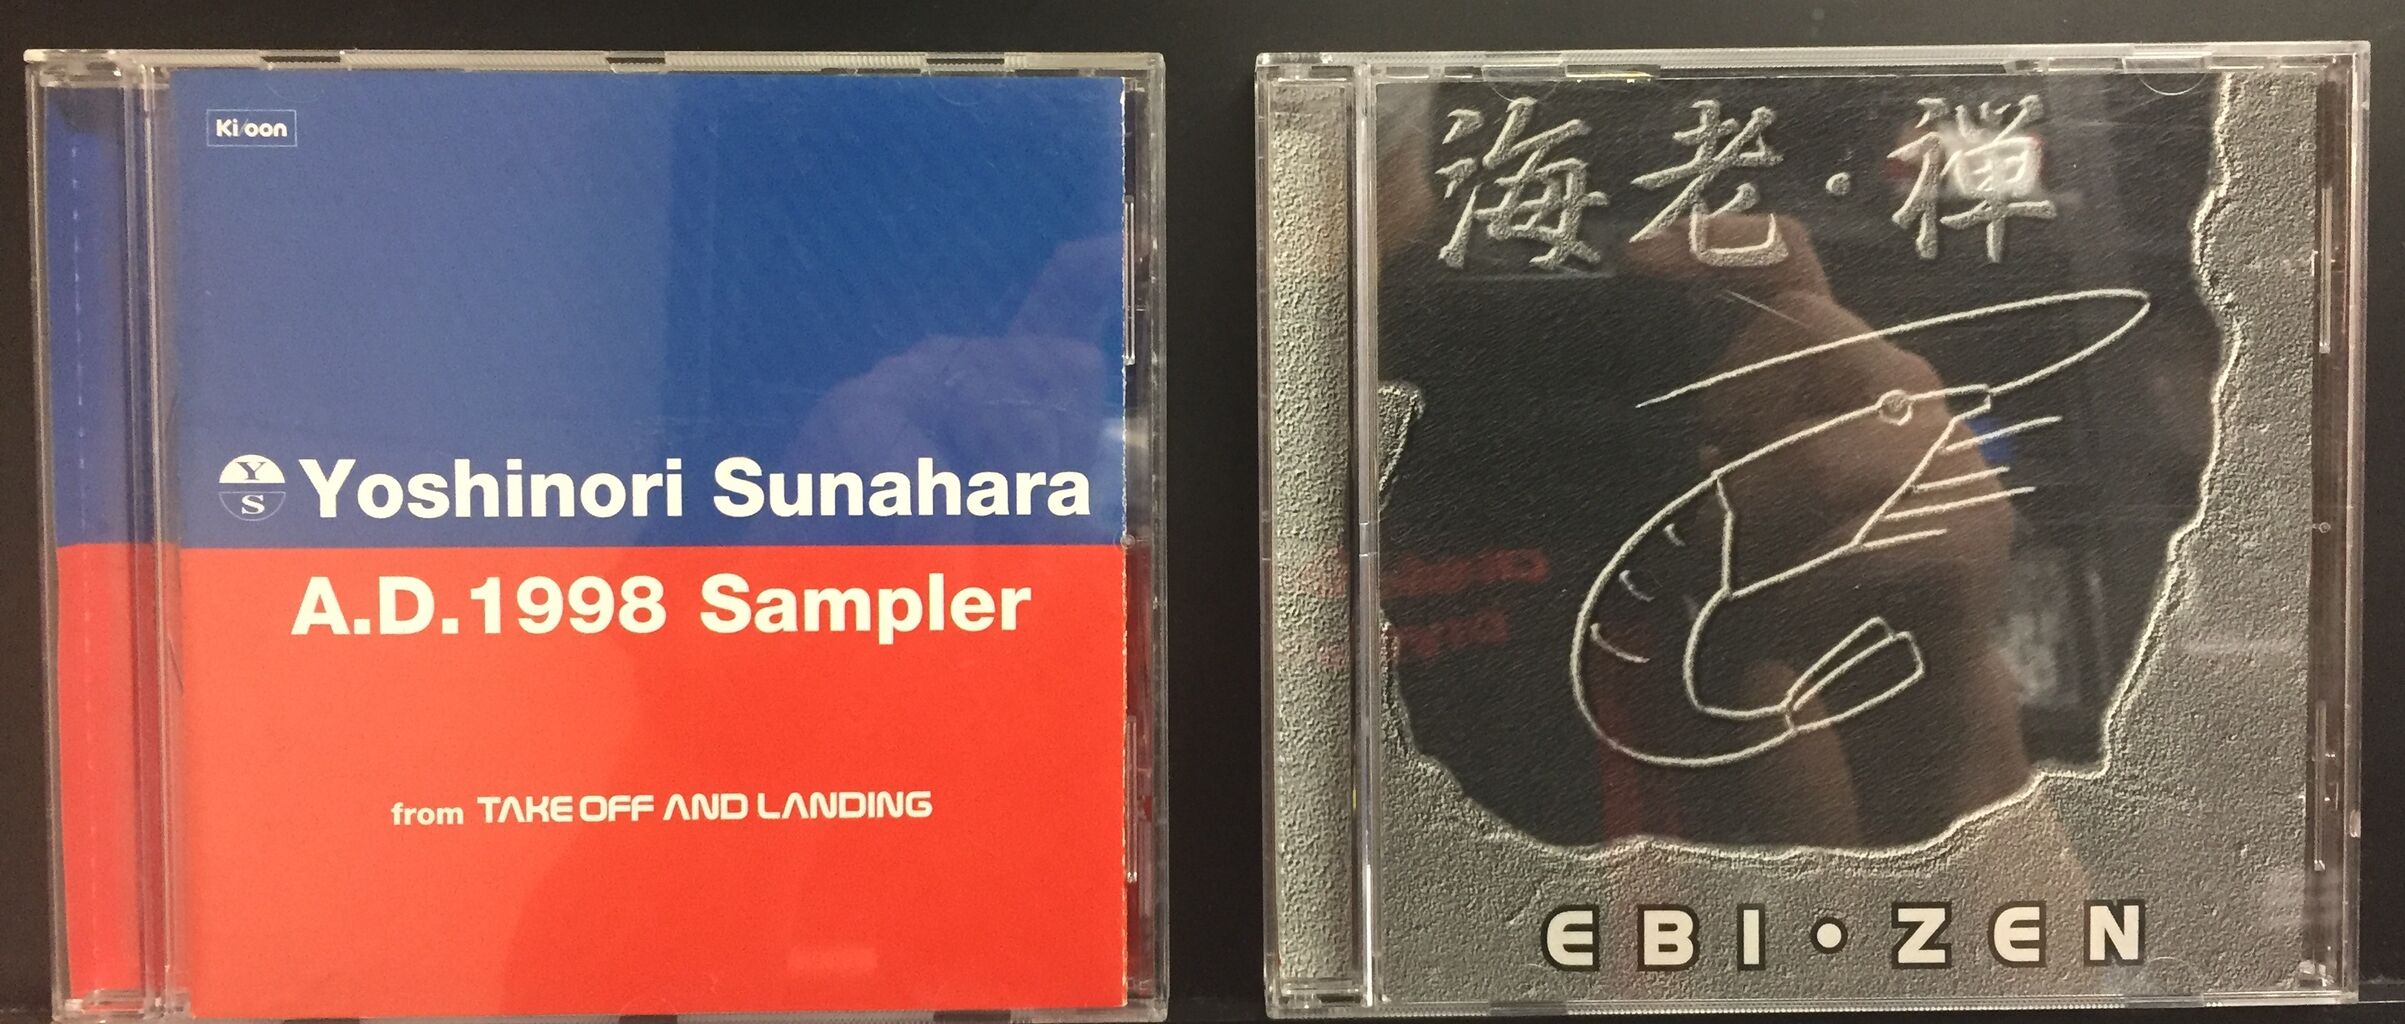 11/26(土) 砂原良徳,EBI (SUSUMU YOKOTA)中古CD入荷しました 